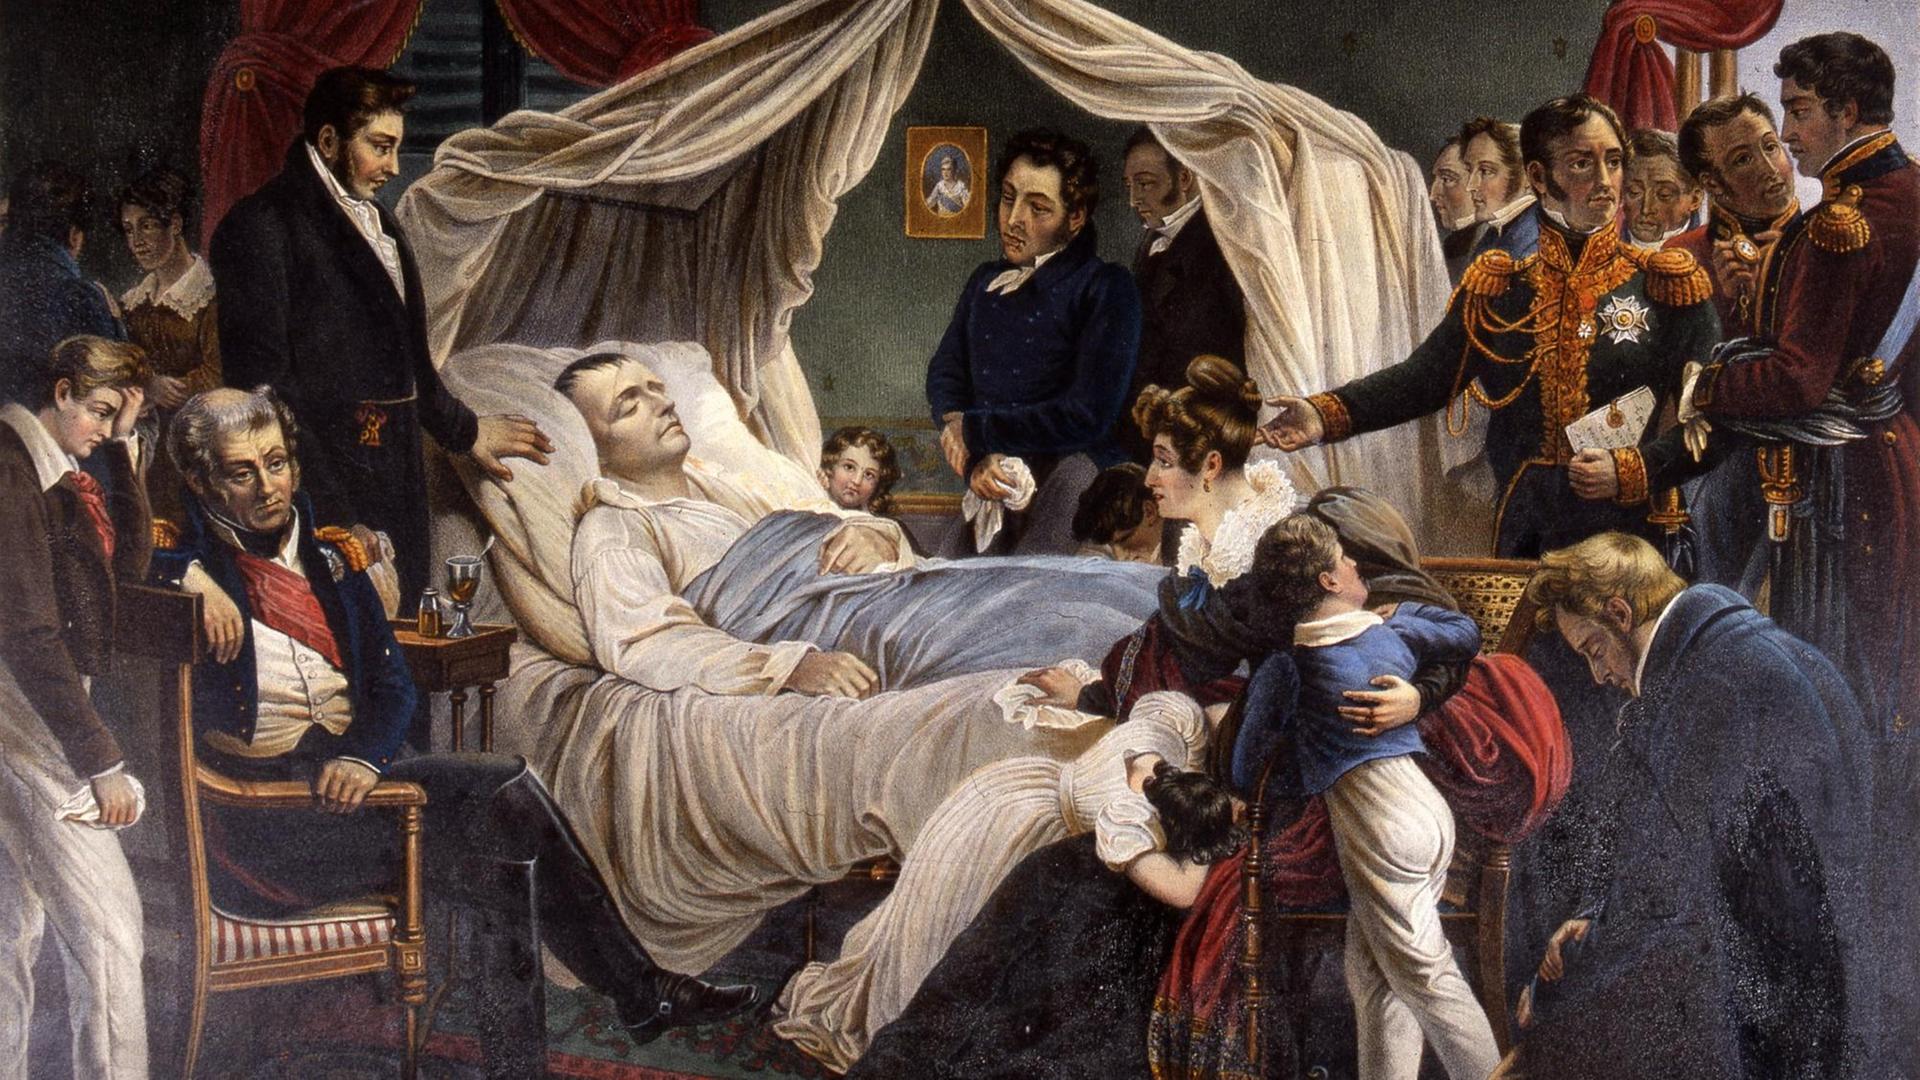 Der Tod Napoleons - Illustration nach dem Gemälde von Charles de Steuben aus dem Jahr 1821